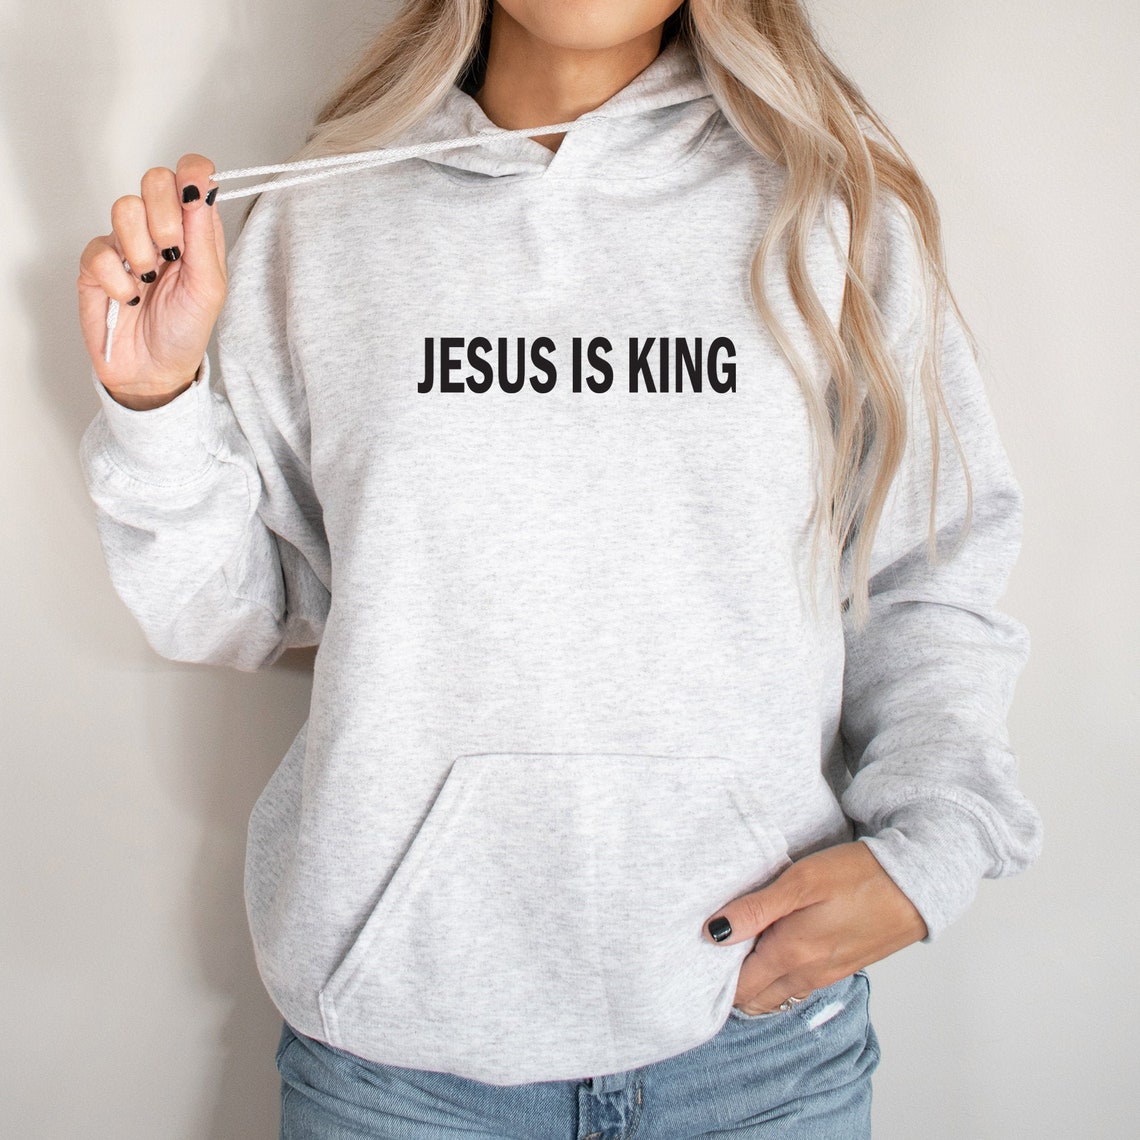 Jesus is King Hoodie for Women Christian Sweatshirt. Jesus Is | Etsy